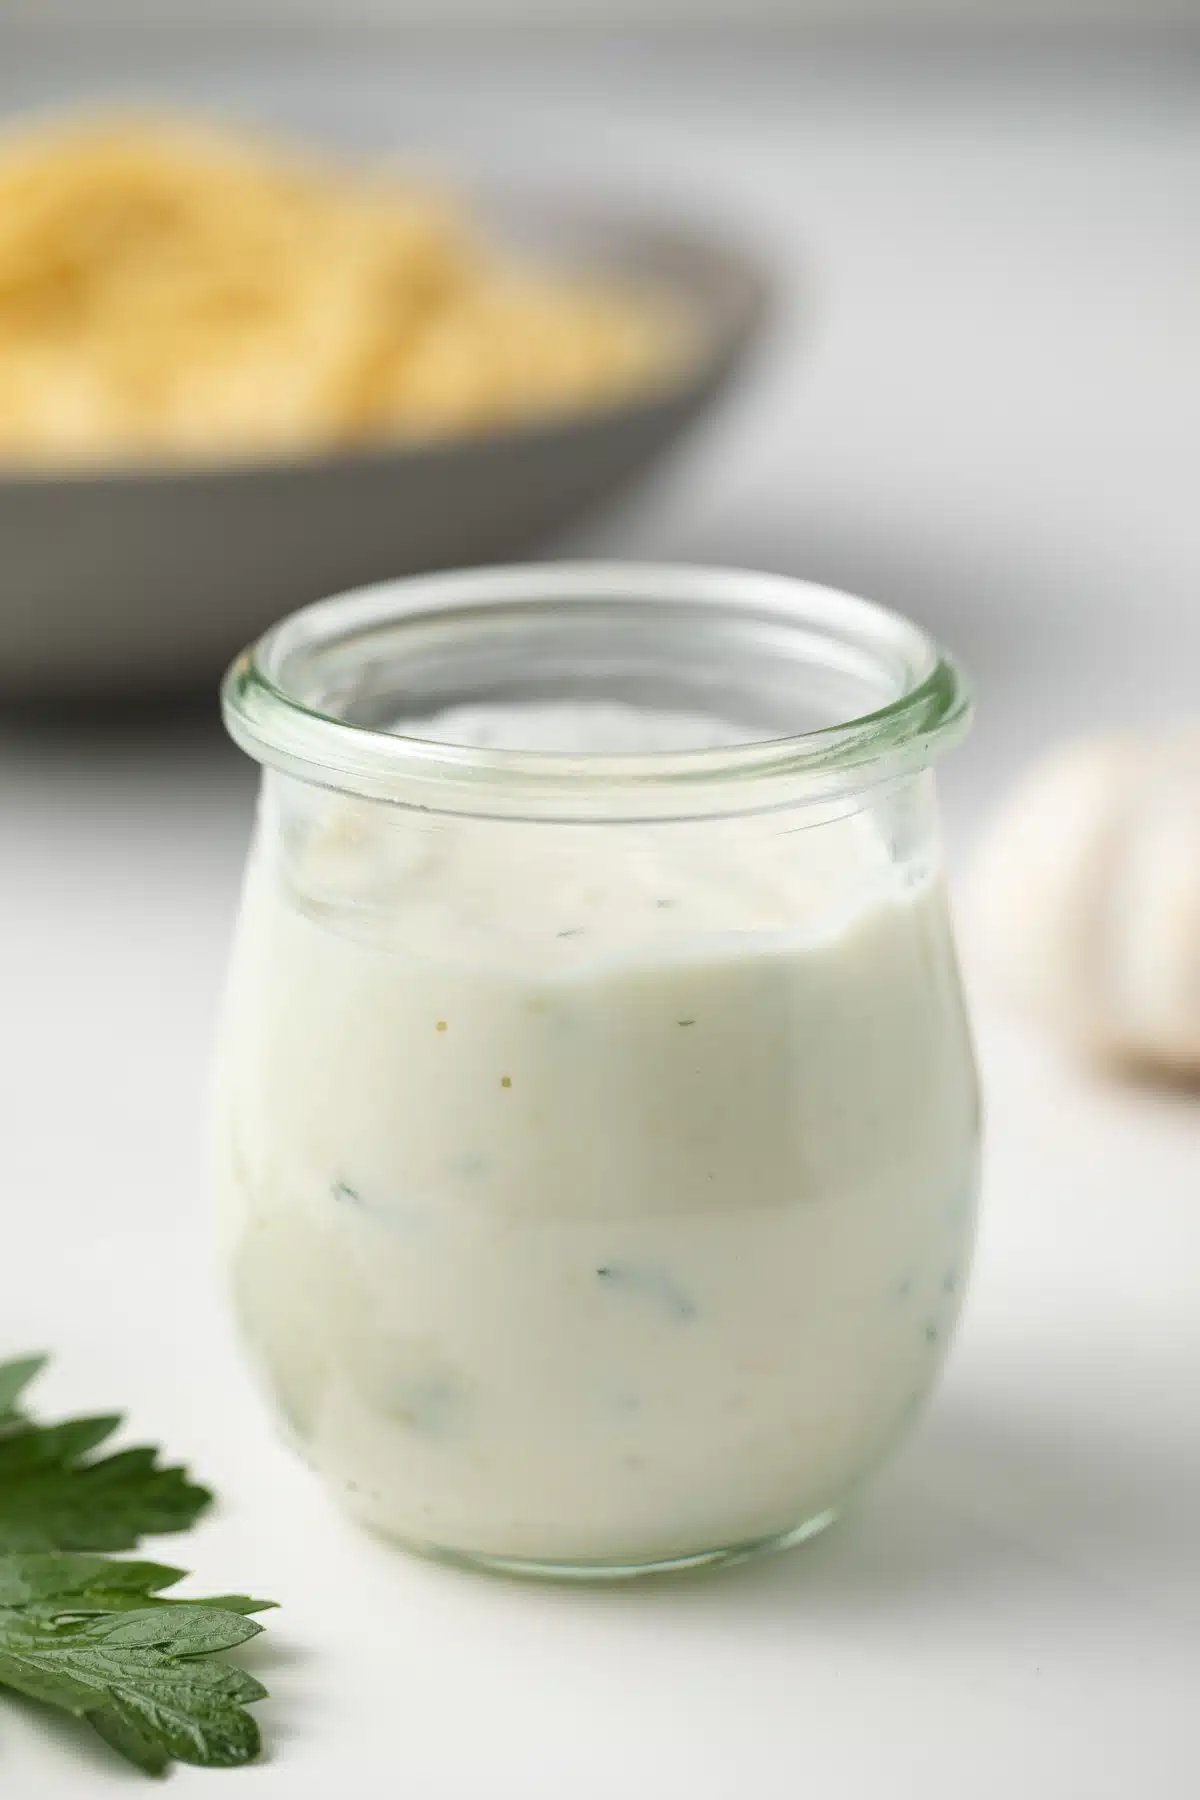 Garlic cream sauce in a jar.